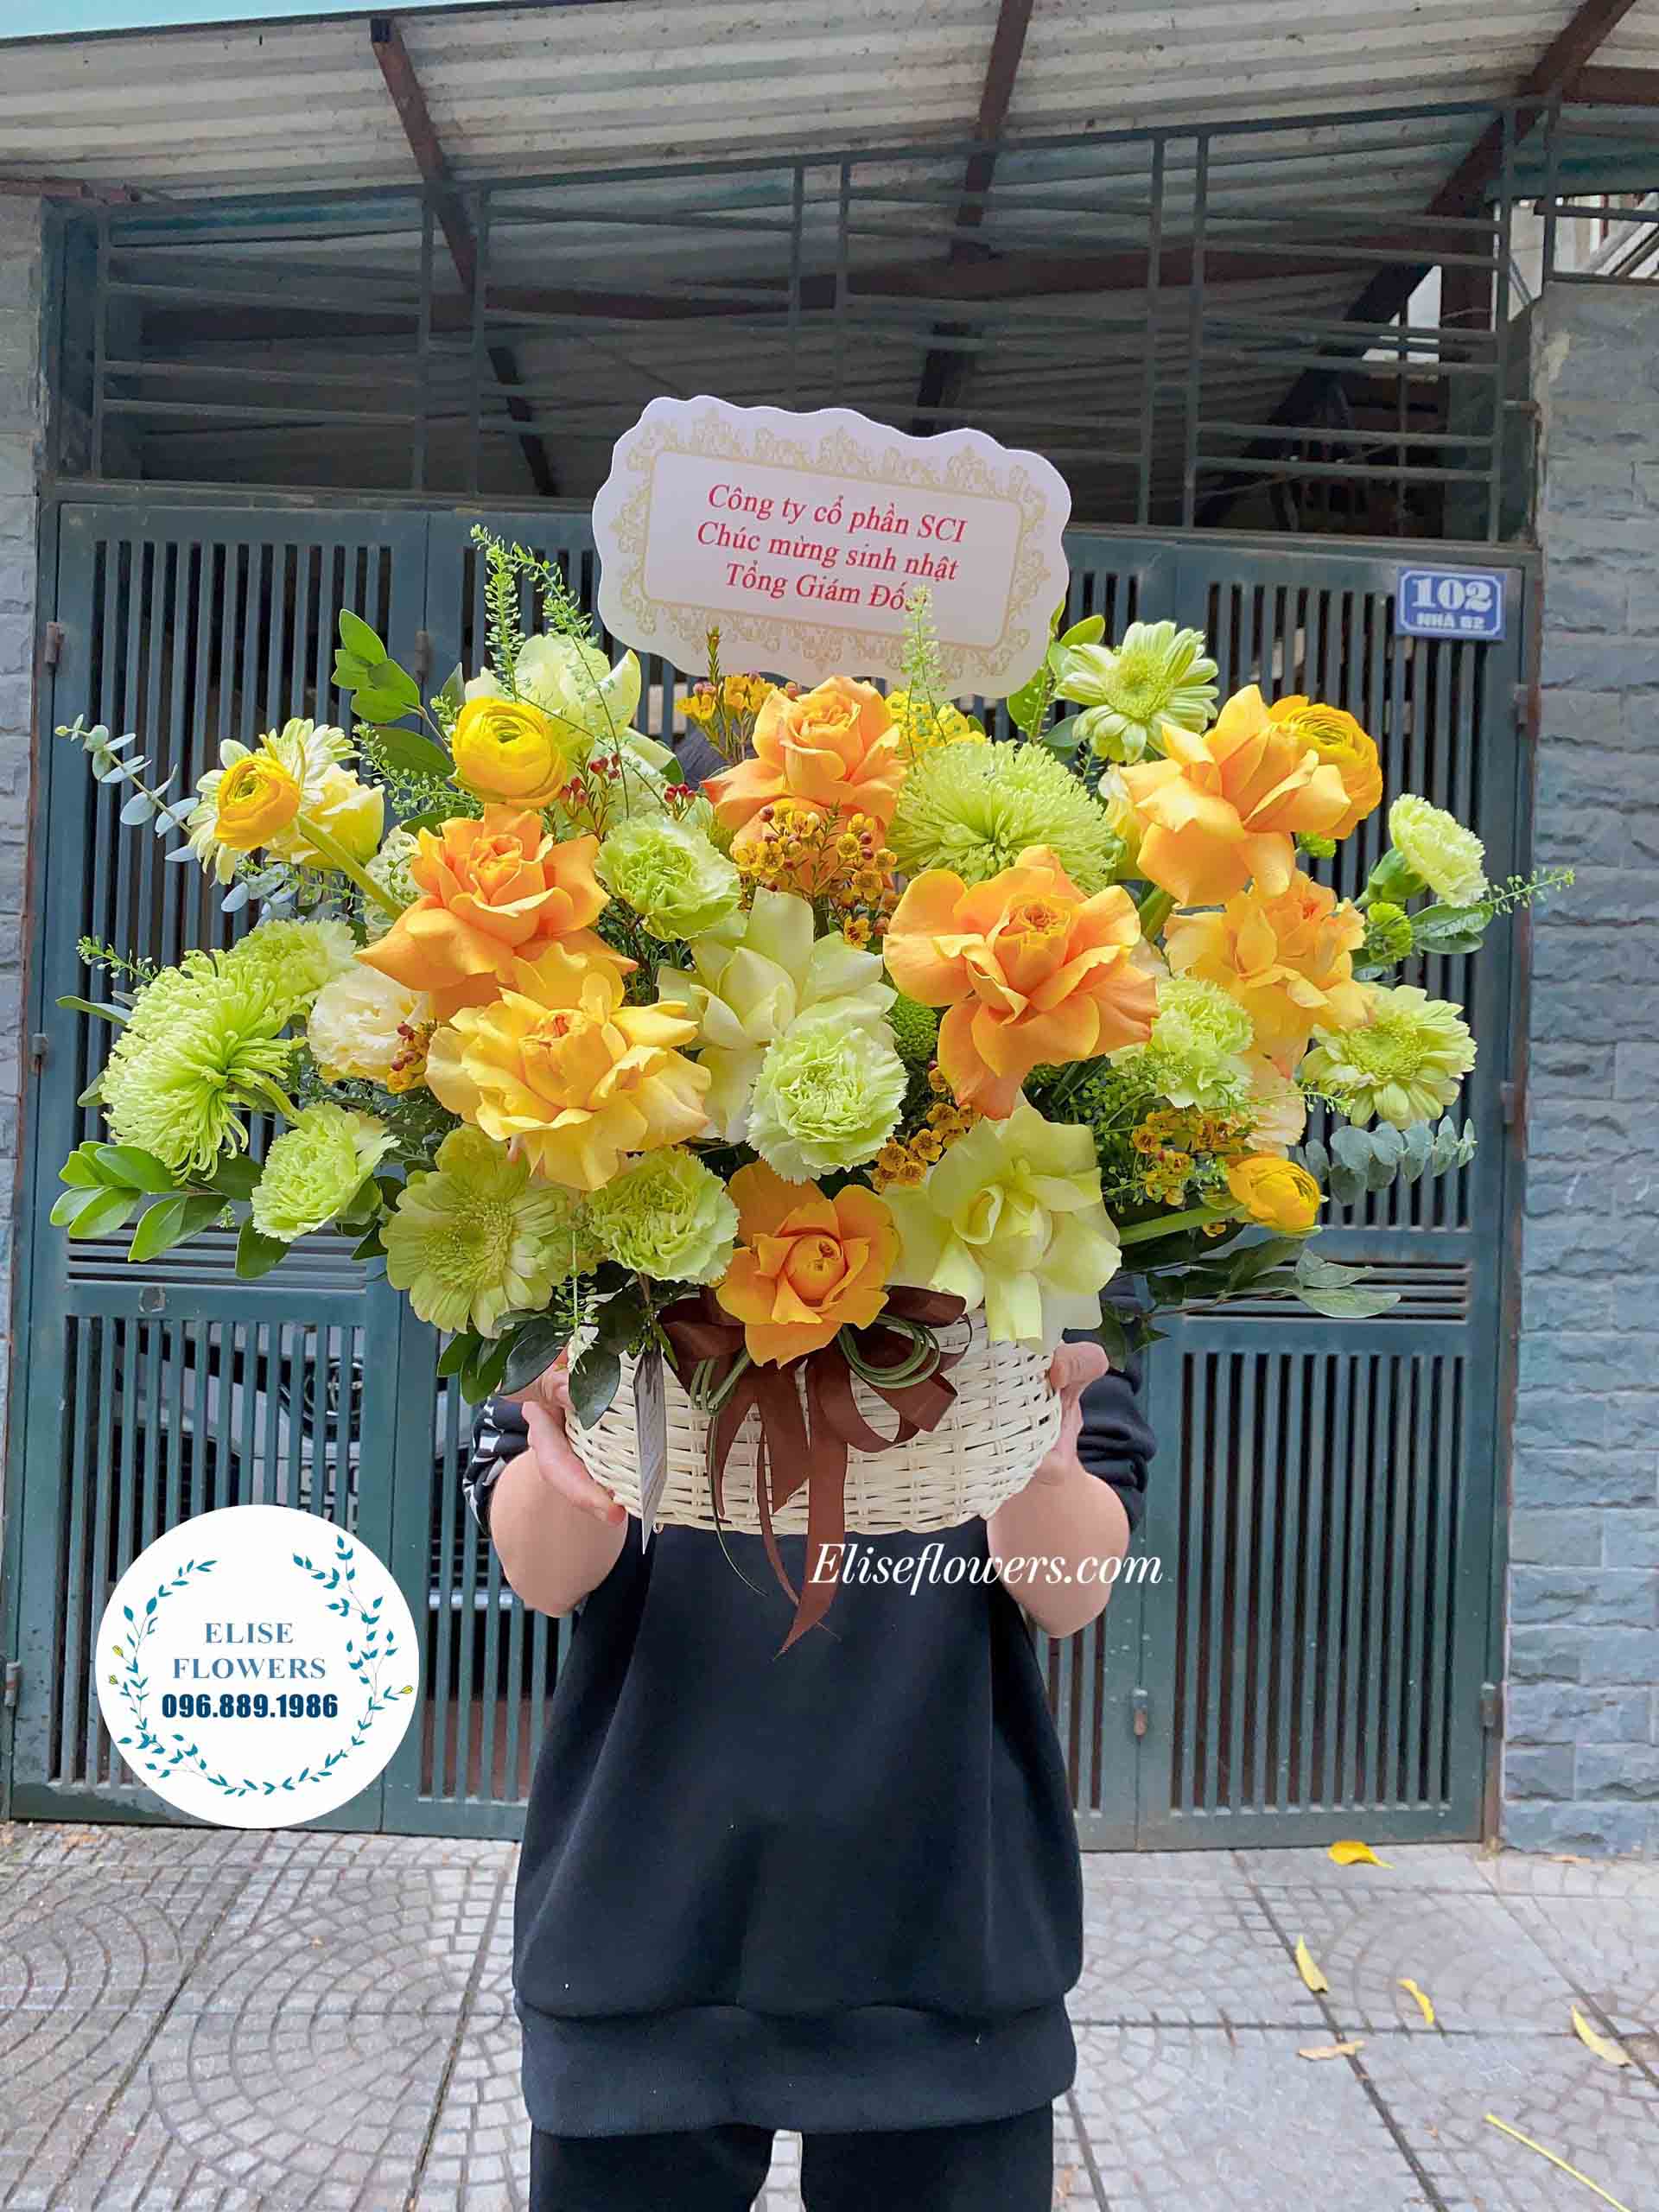 Lẵng hoa sinh nhật đẹp ở quận Cầu Giấy - Hà Nội | Elise Flowers